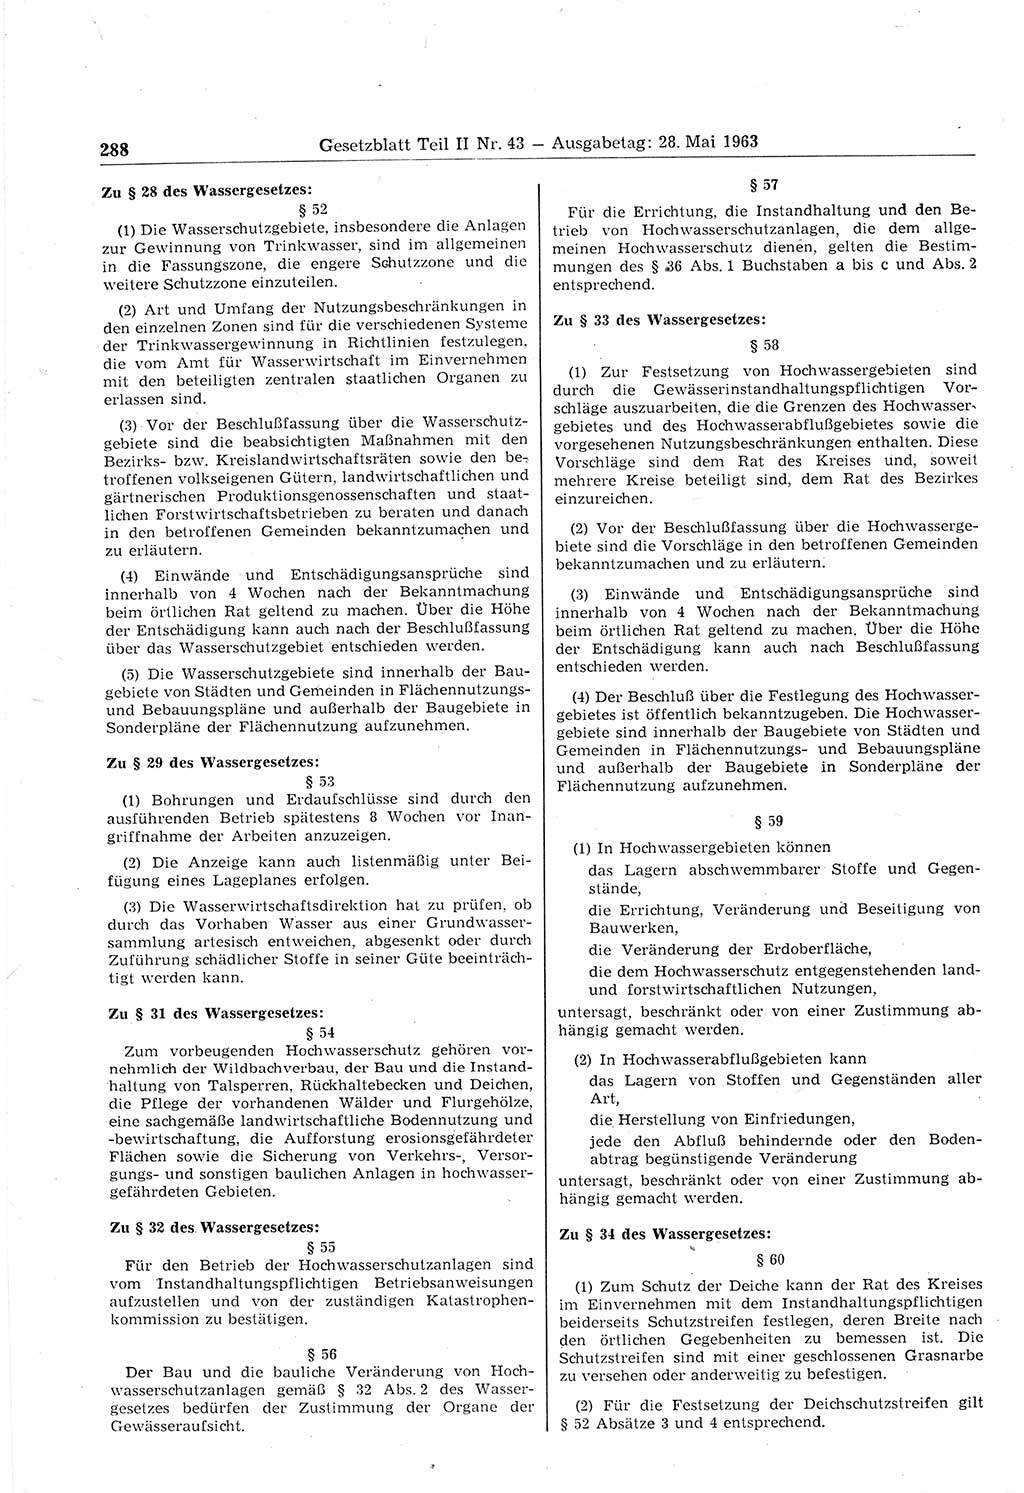 Gesetzblatt (GBl.) der Deutschen Demokratischen Republik (DDR) Teil ⅠⅠ 1963, Seite 288 (GBl. DDR ⅠⅠ 1963, S. 288)